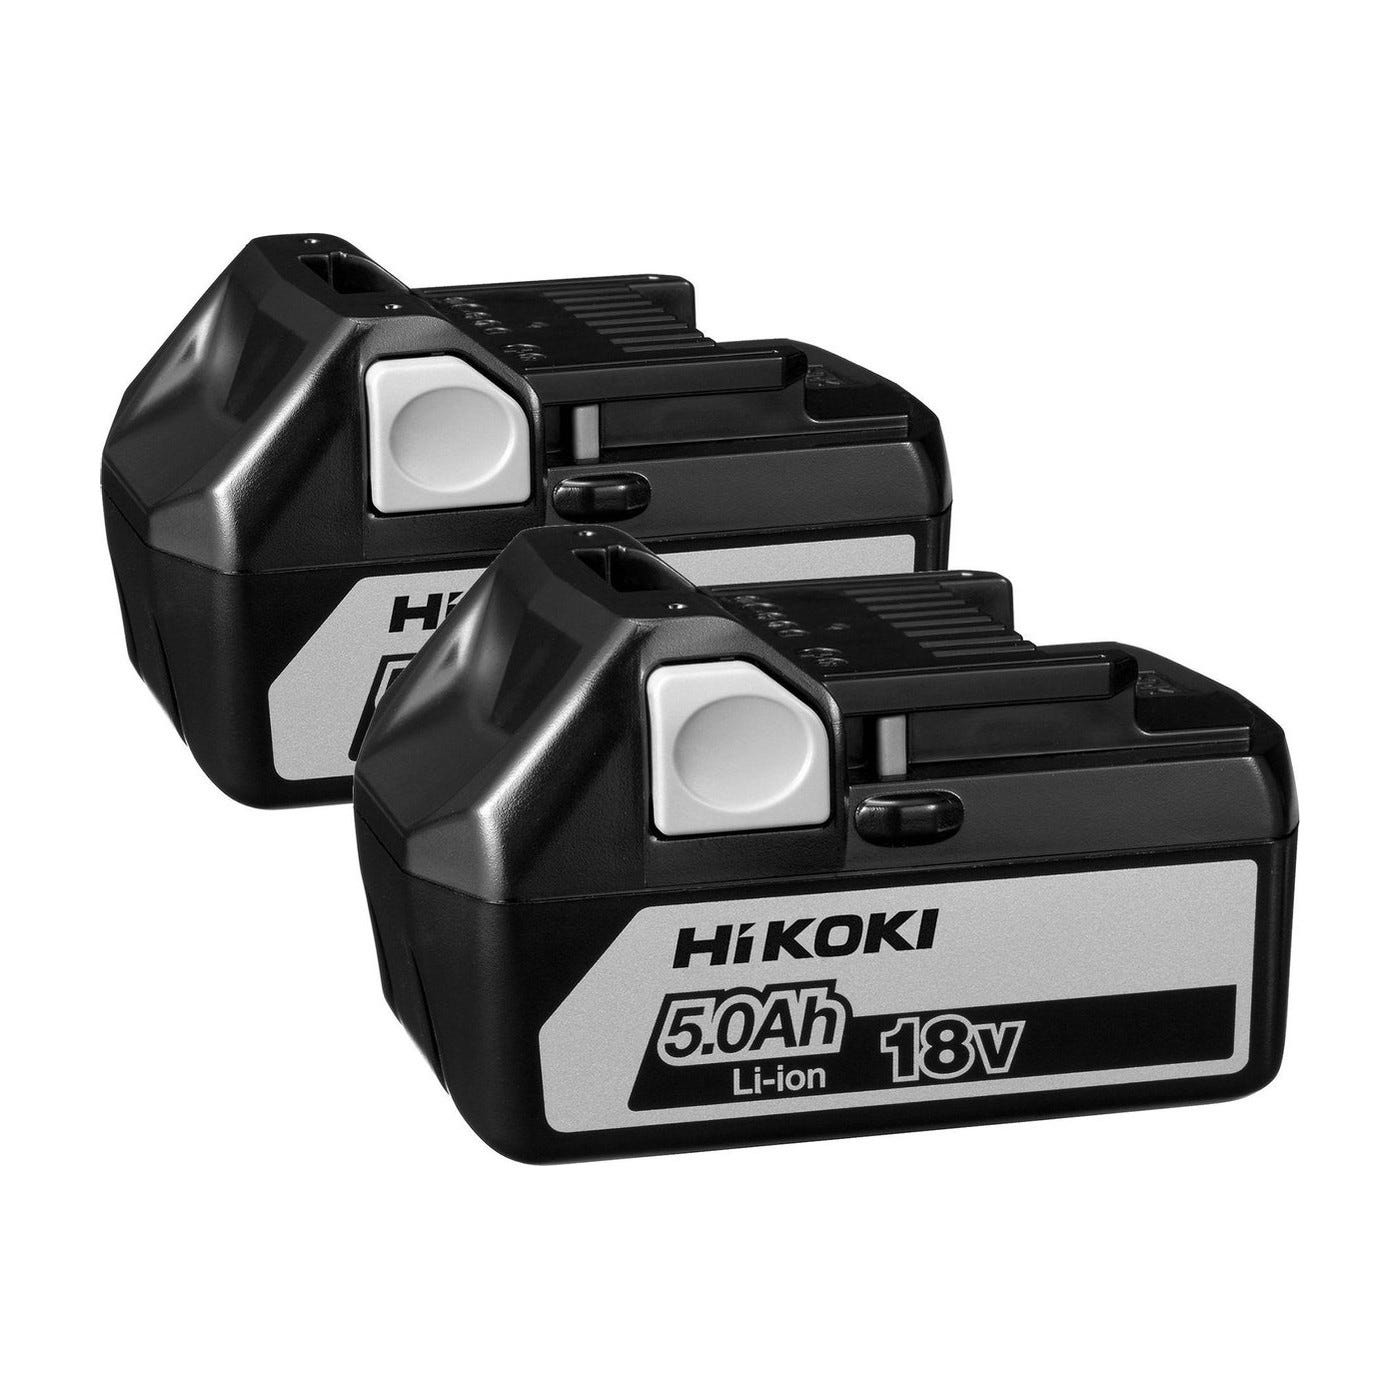 Hitachi - Hikoki - Pack machines à batterie perceuse-visseuse et boulonneuse 18V 2x5Ah Li-Ion - KC18DPLWDZ 3